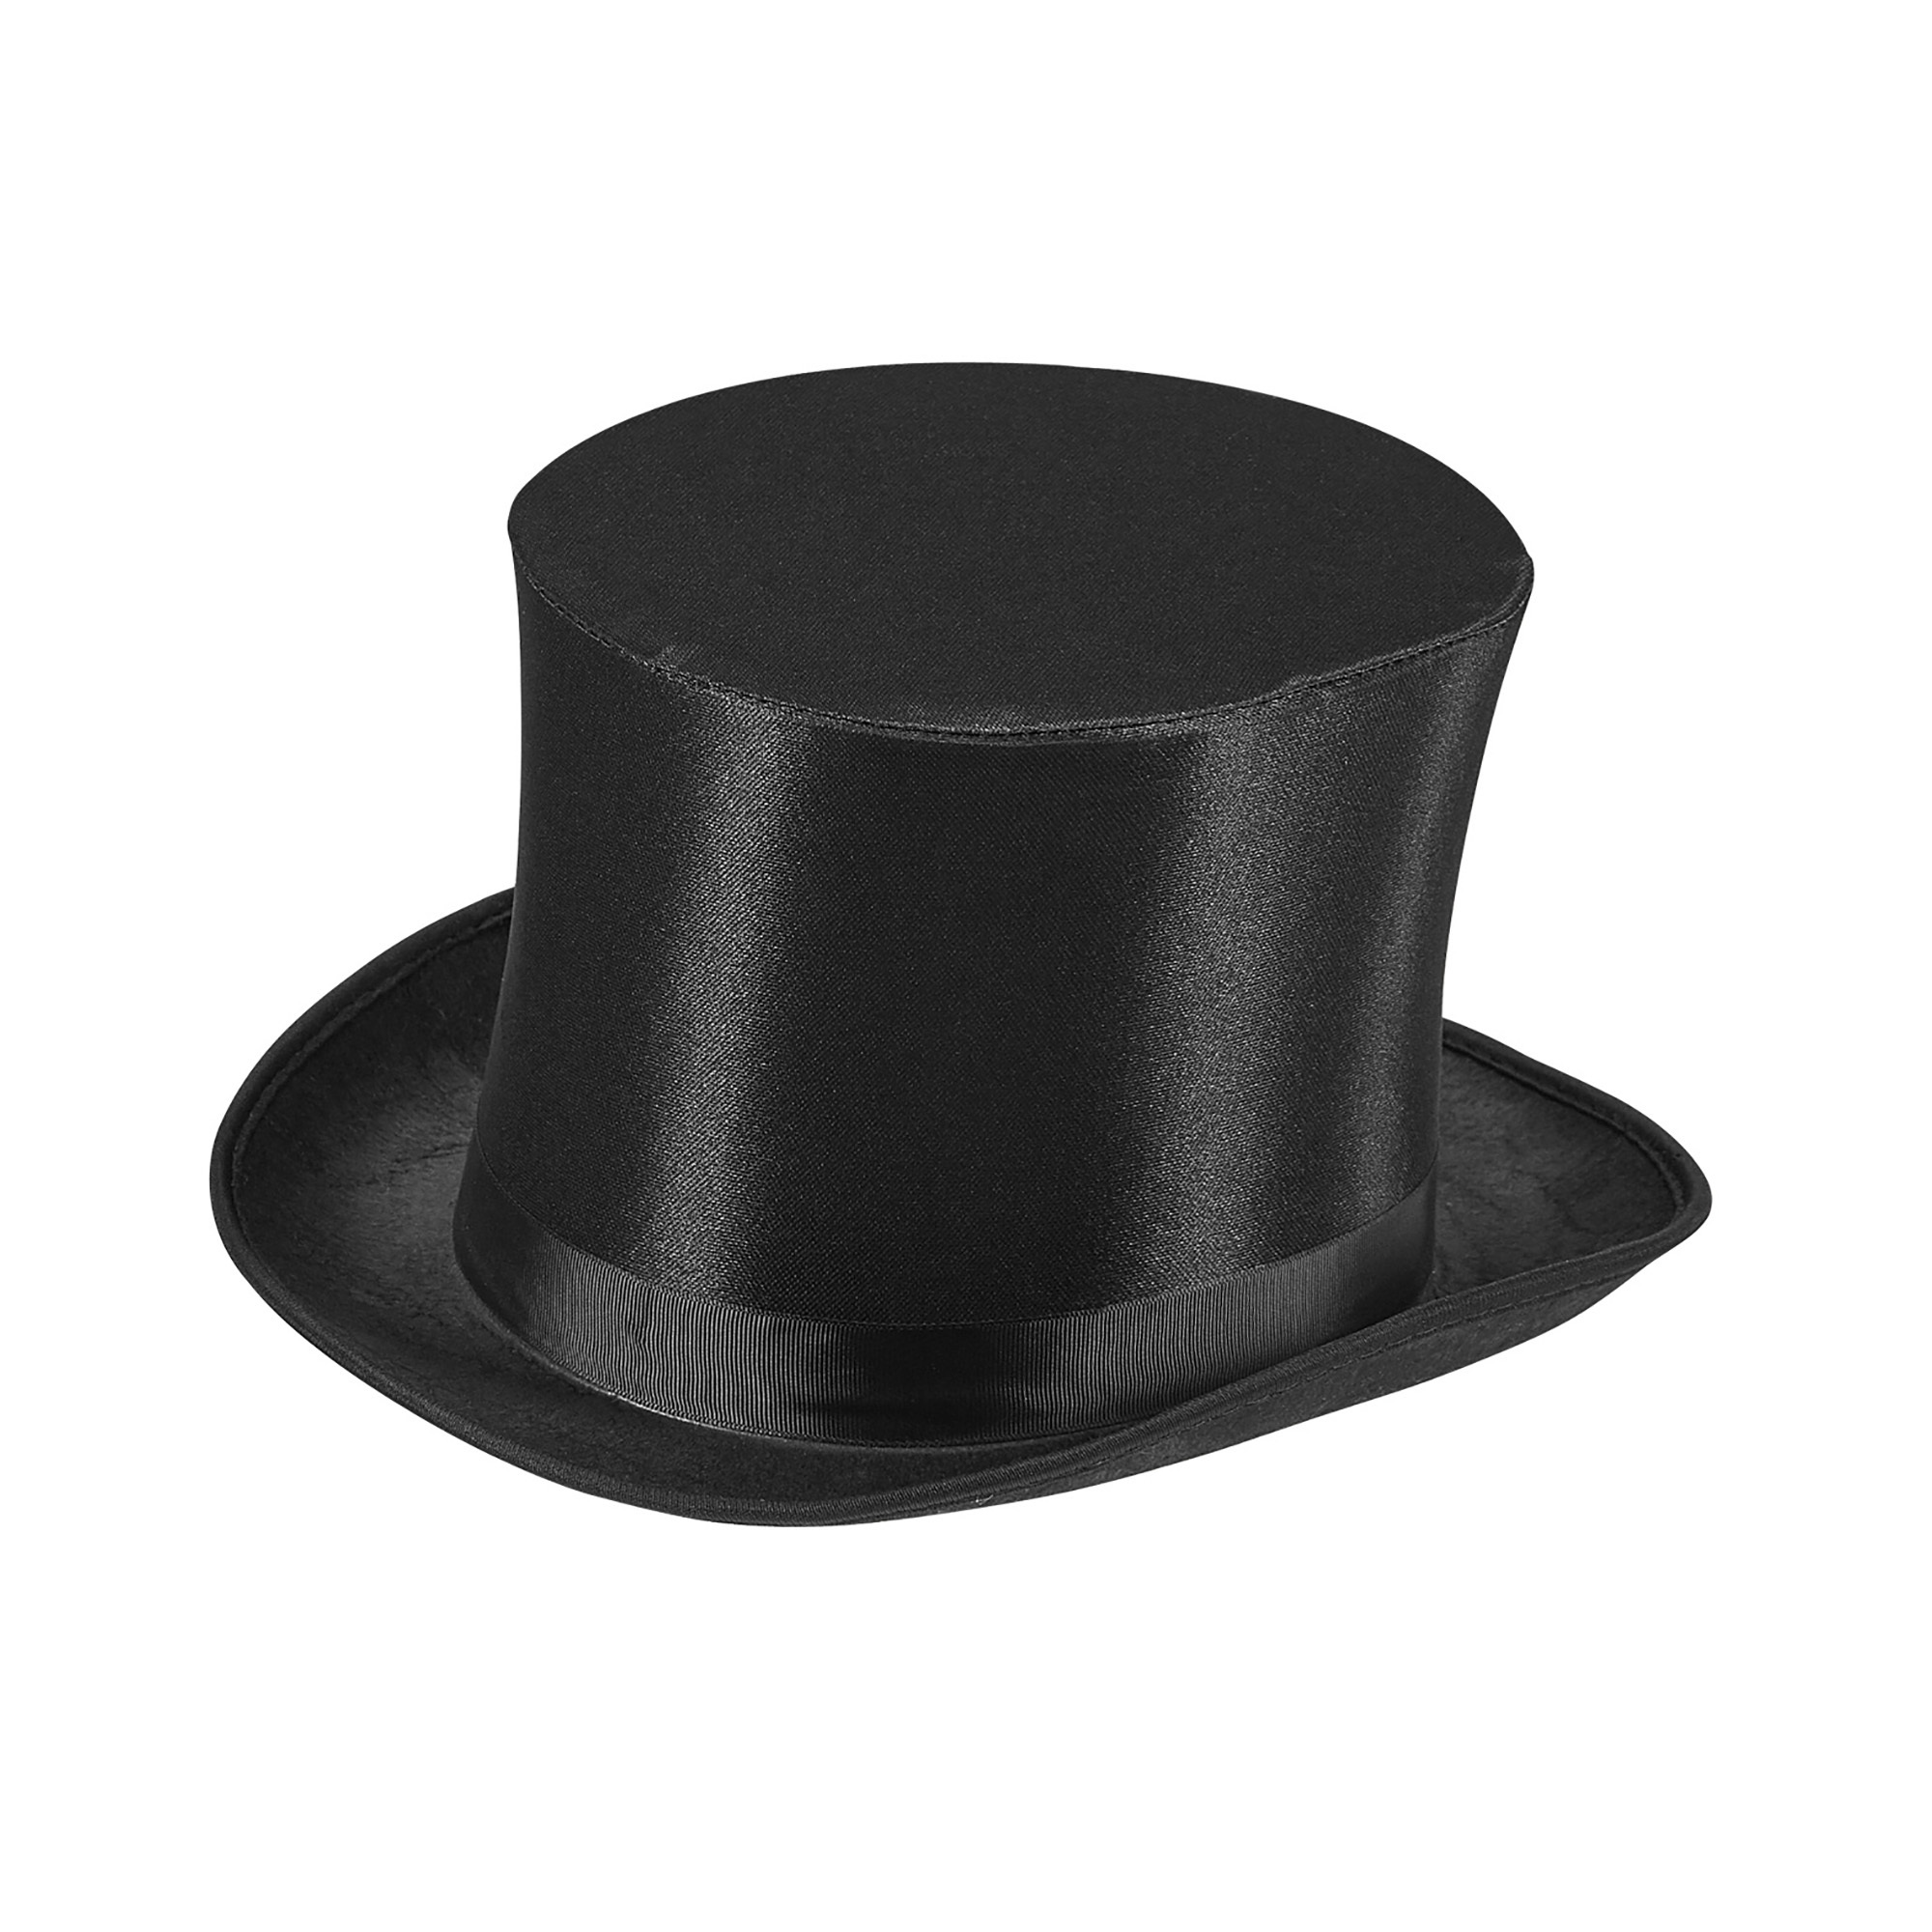 Deftige hoge hoed zwart satijn 